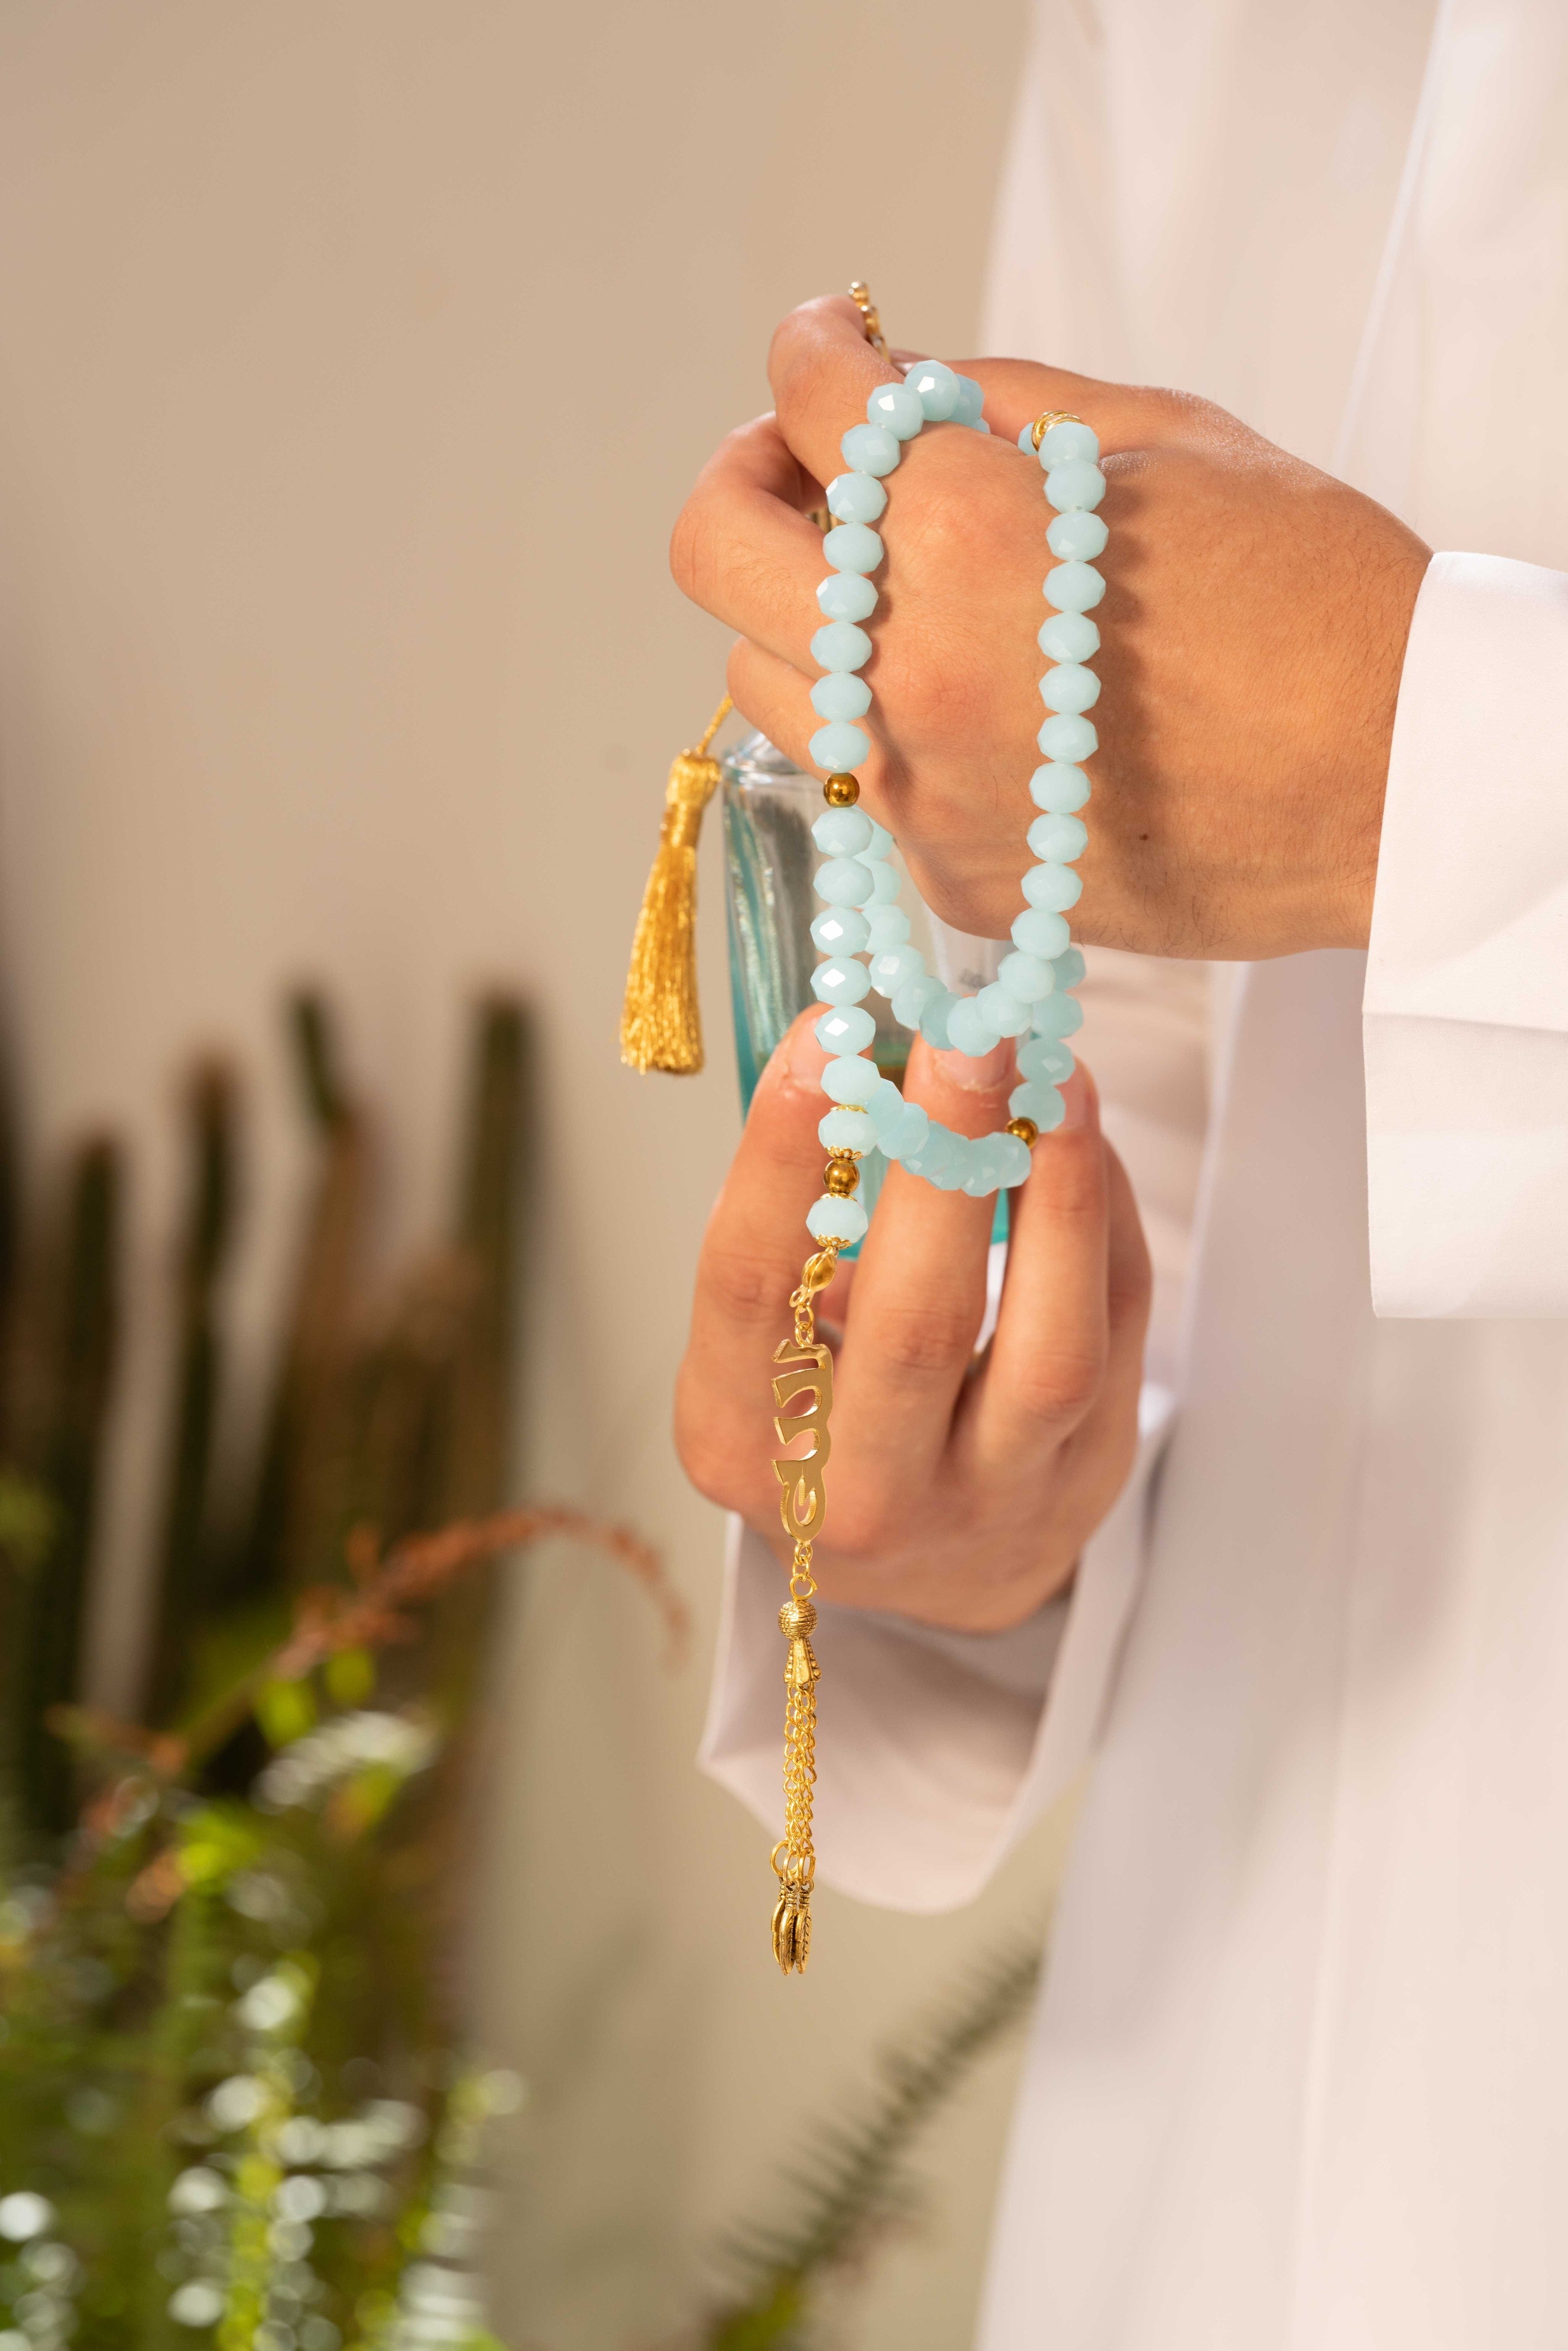 Allah Pearl Rosary (Customizable) - Yshmk